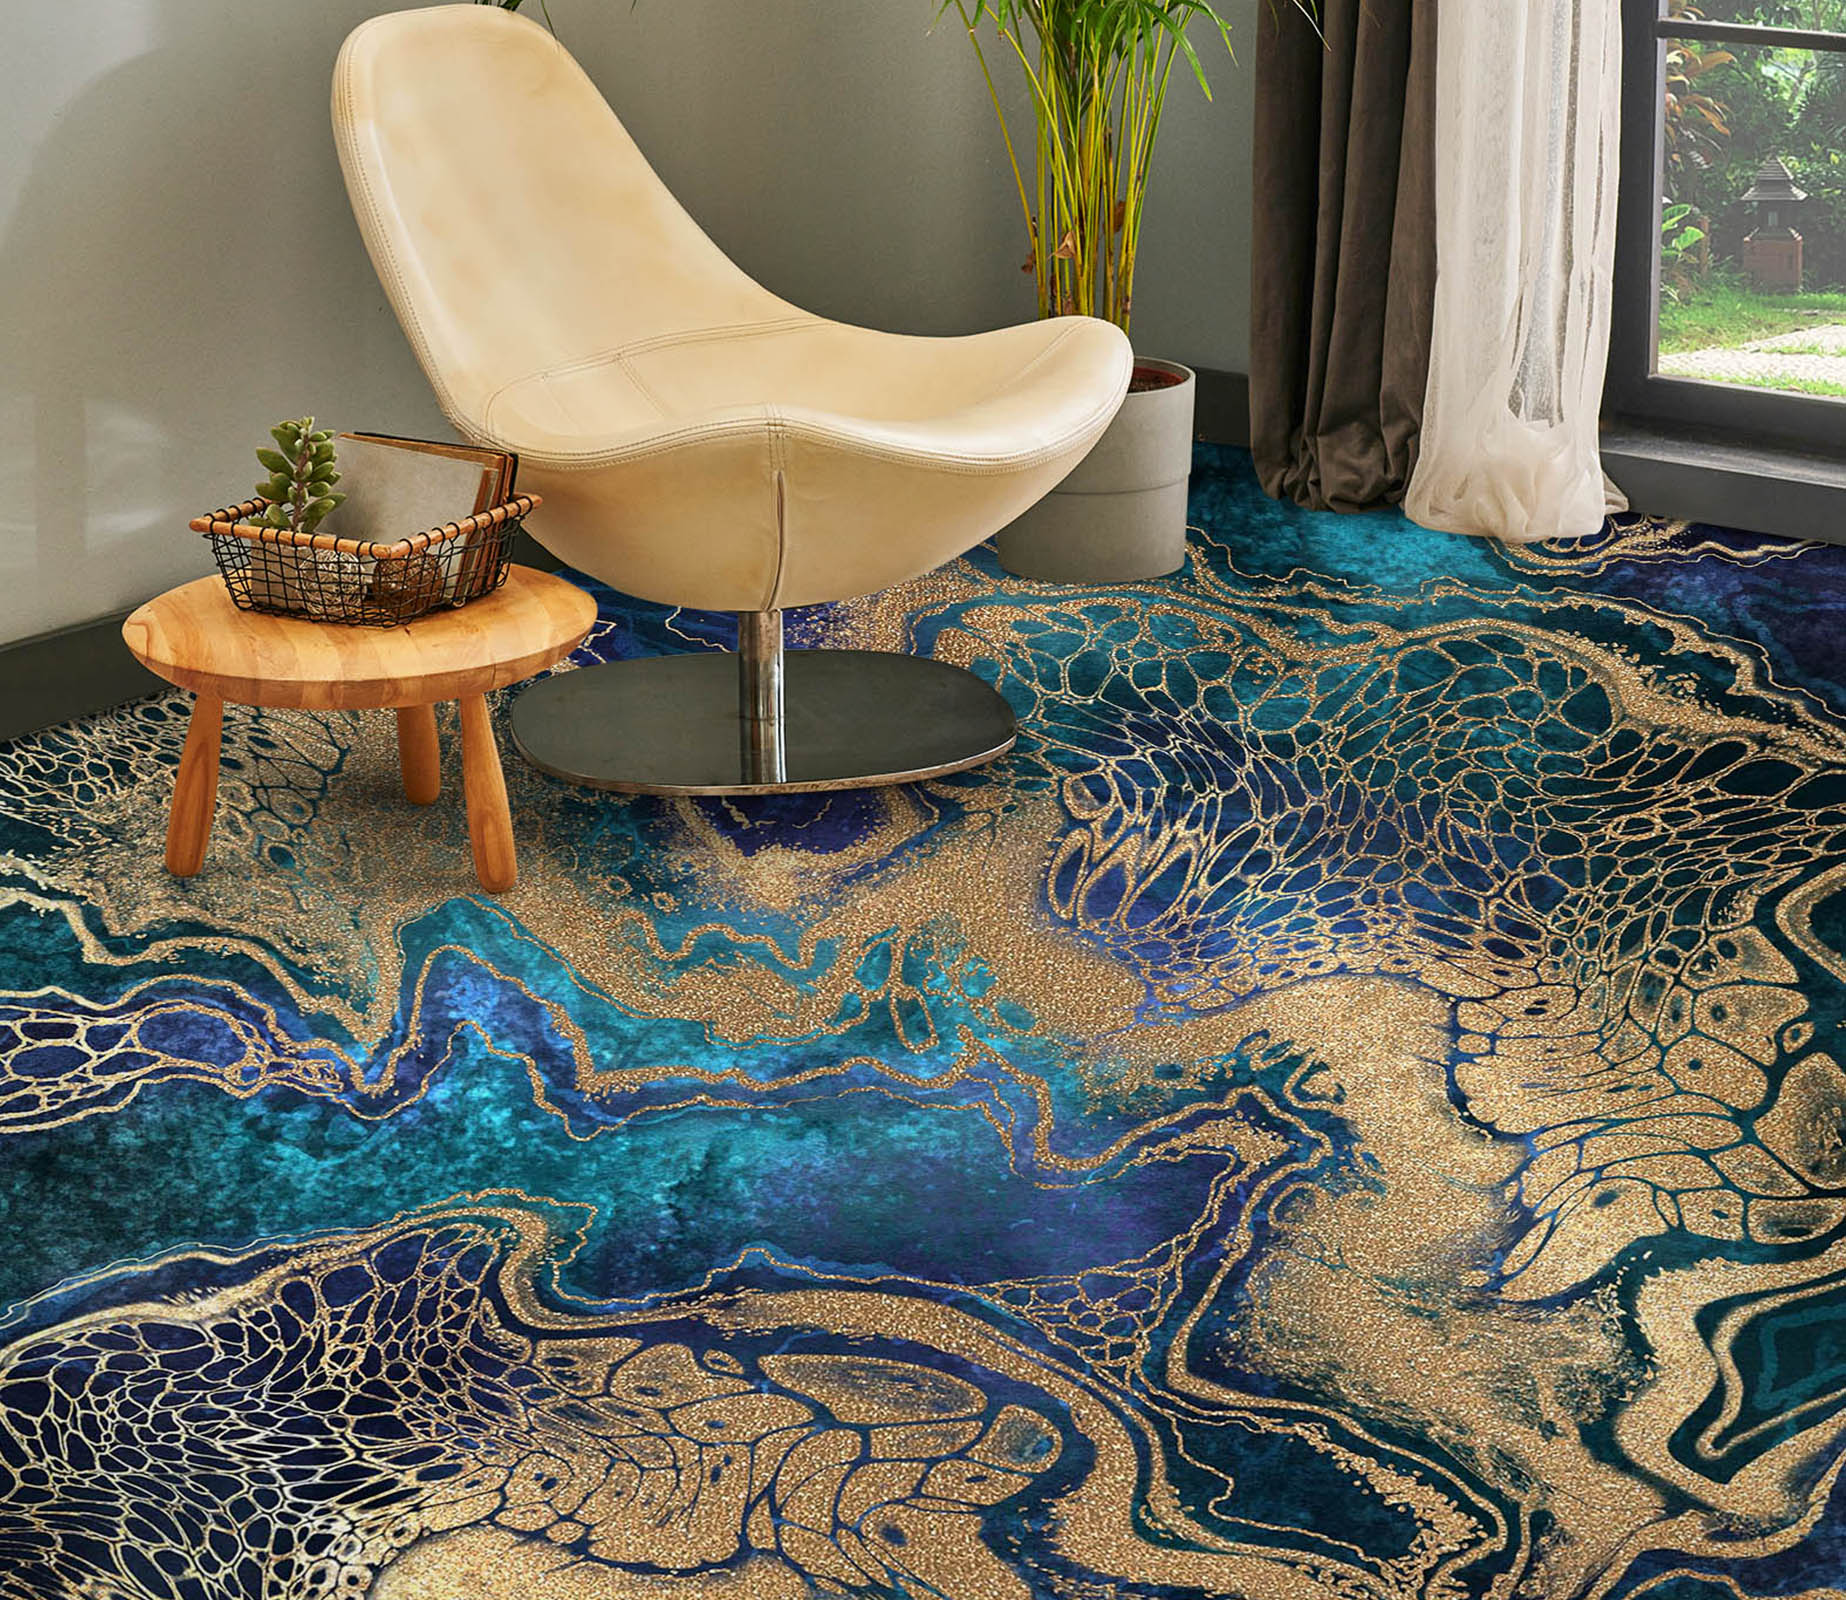 3D Two-color Story Art 580 Floor Mural  Wallpaper Murals Rug & Mat Print Epoxy waterproof bath floor